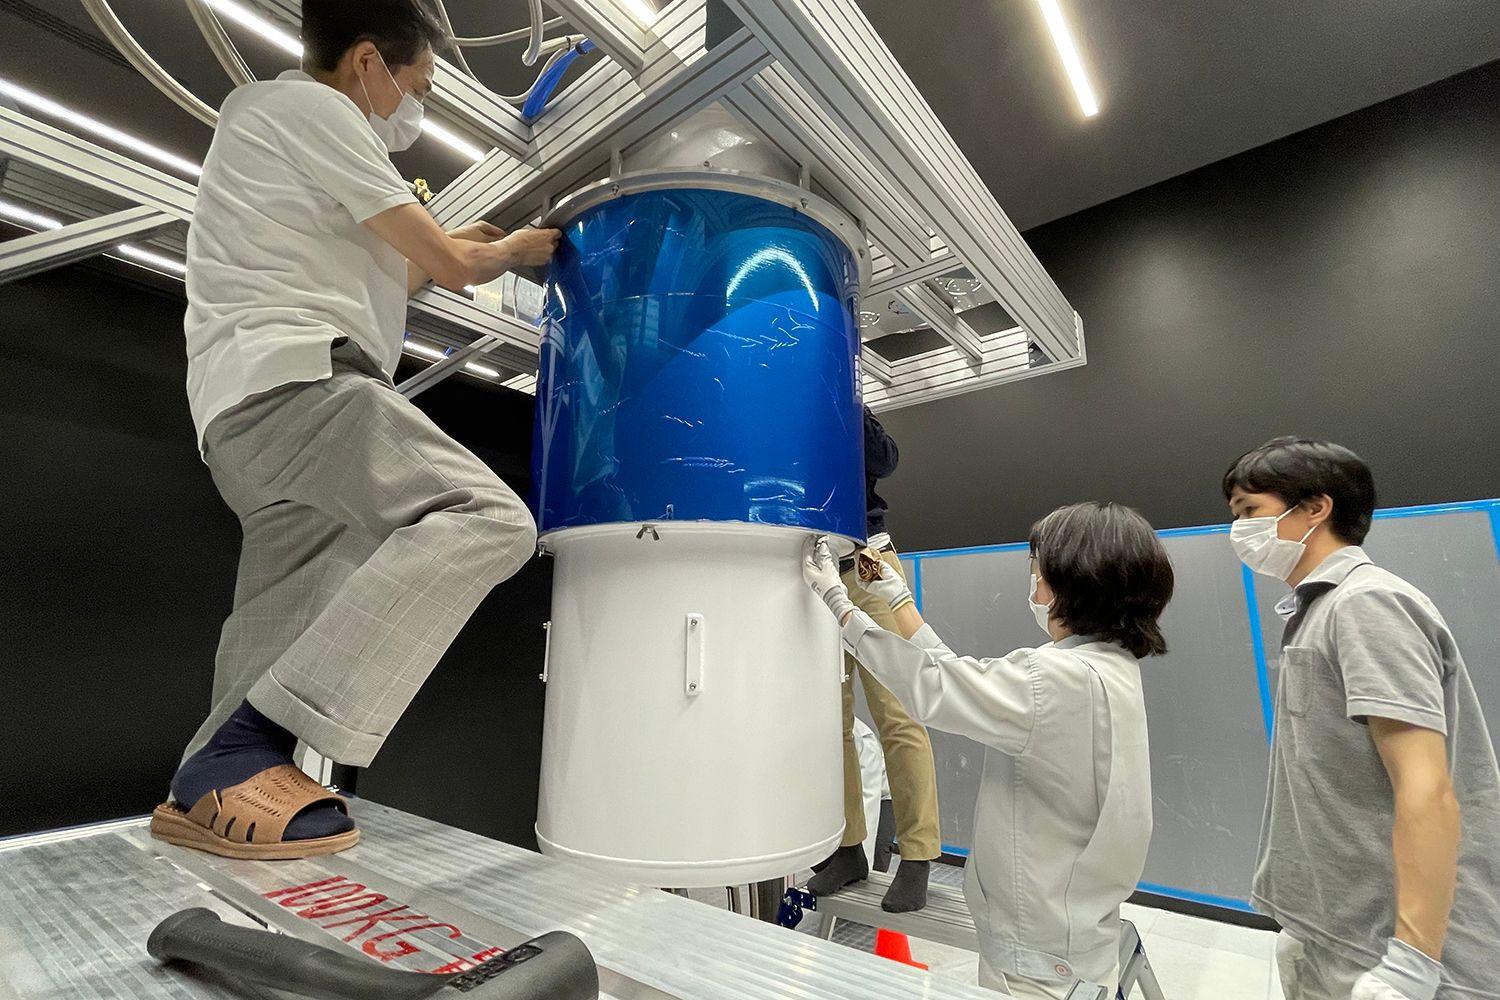 IBM Quantum System One installation at at the Kawasaki Business Incubation Center in Kawasaki City, Japan.